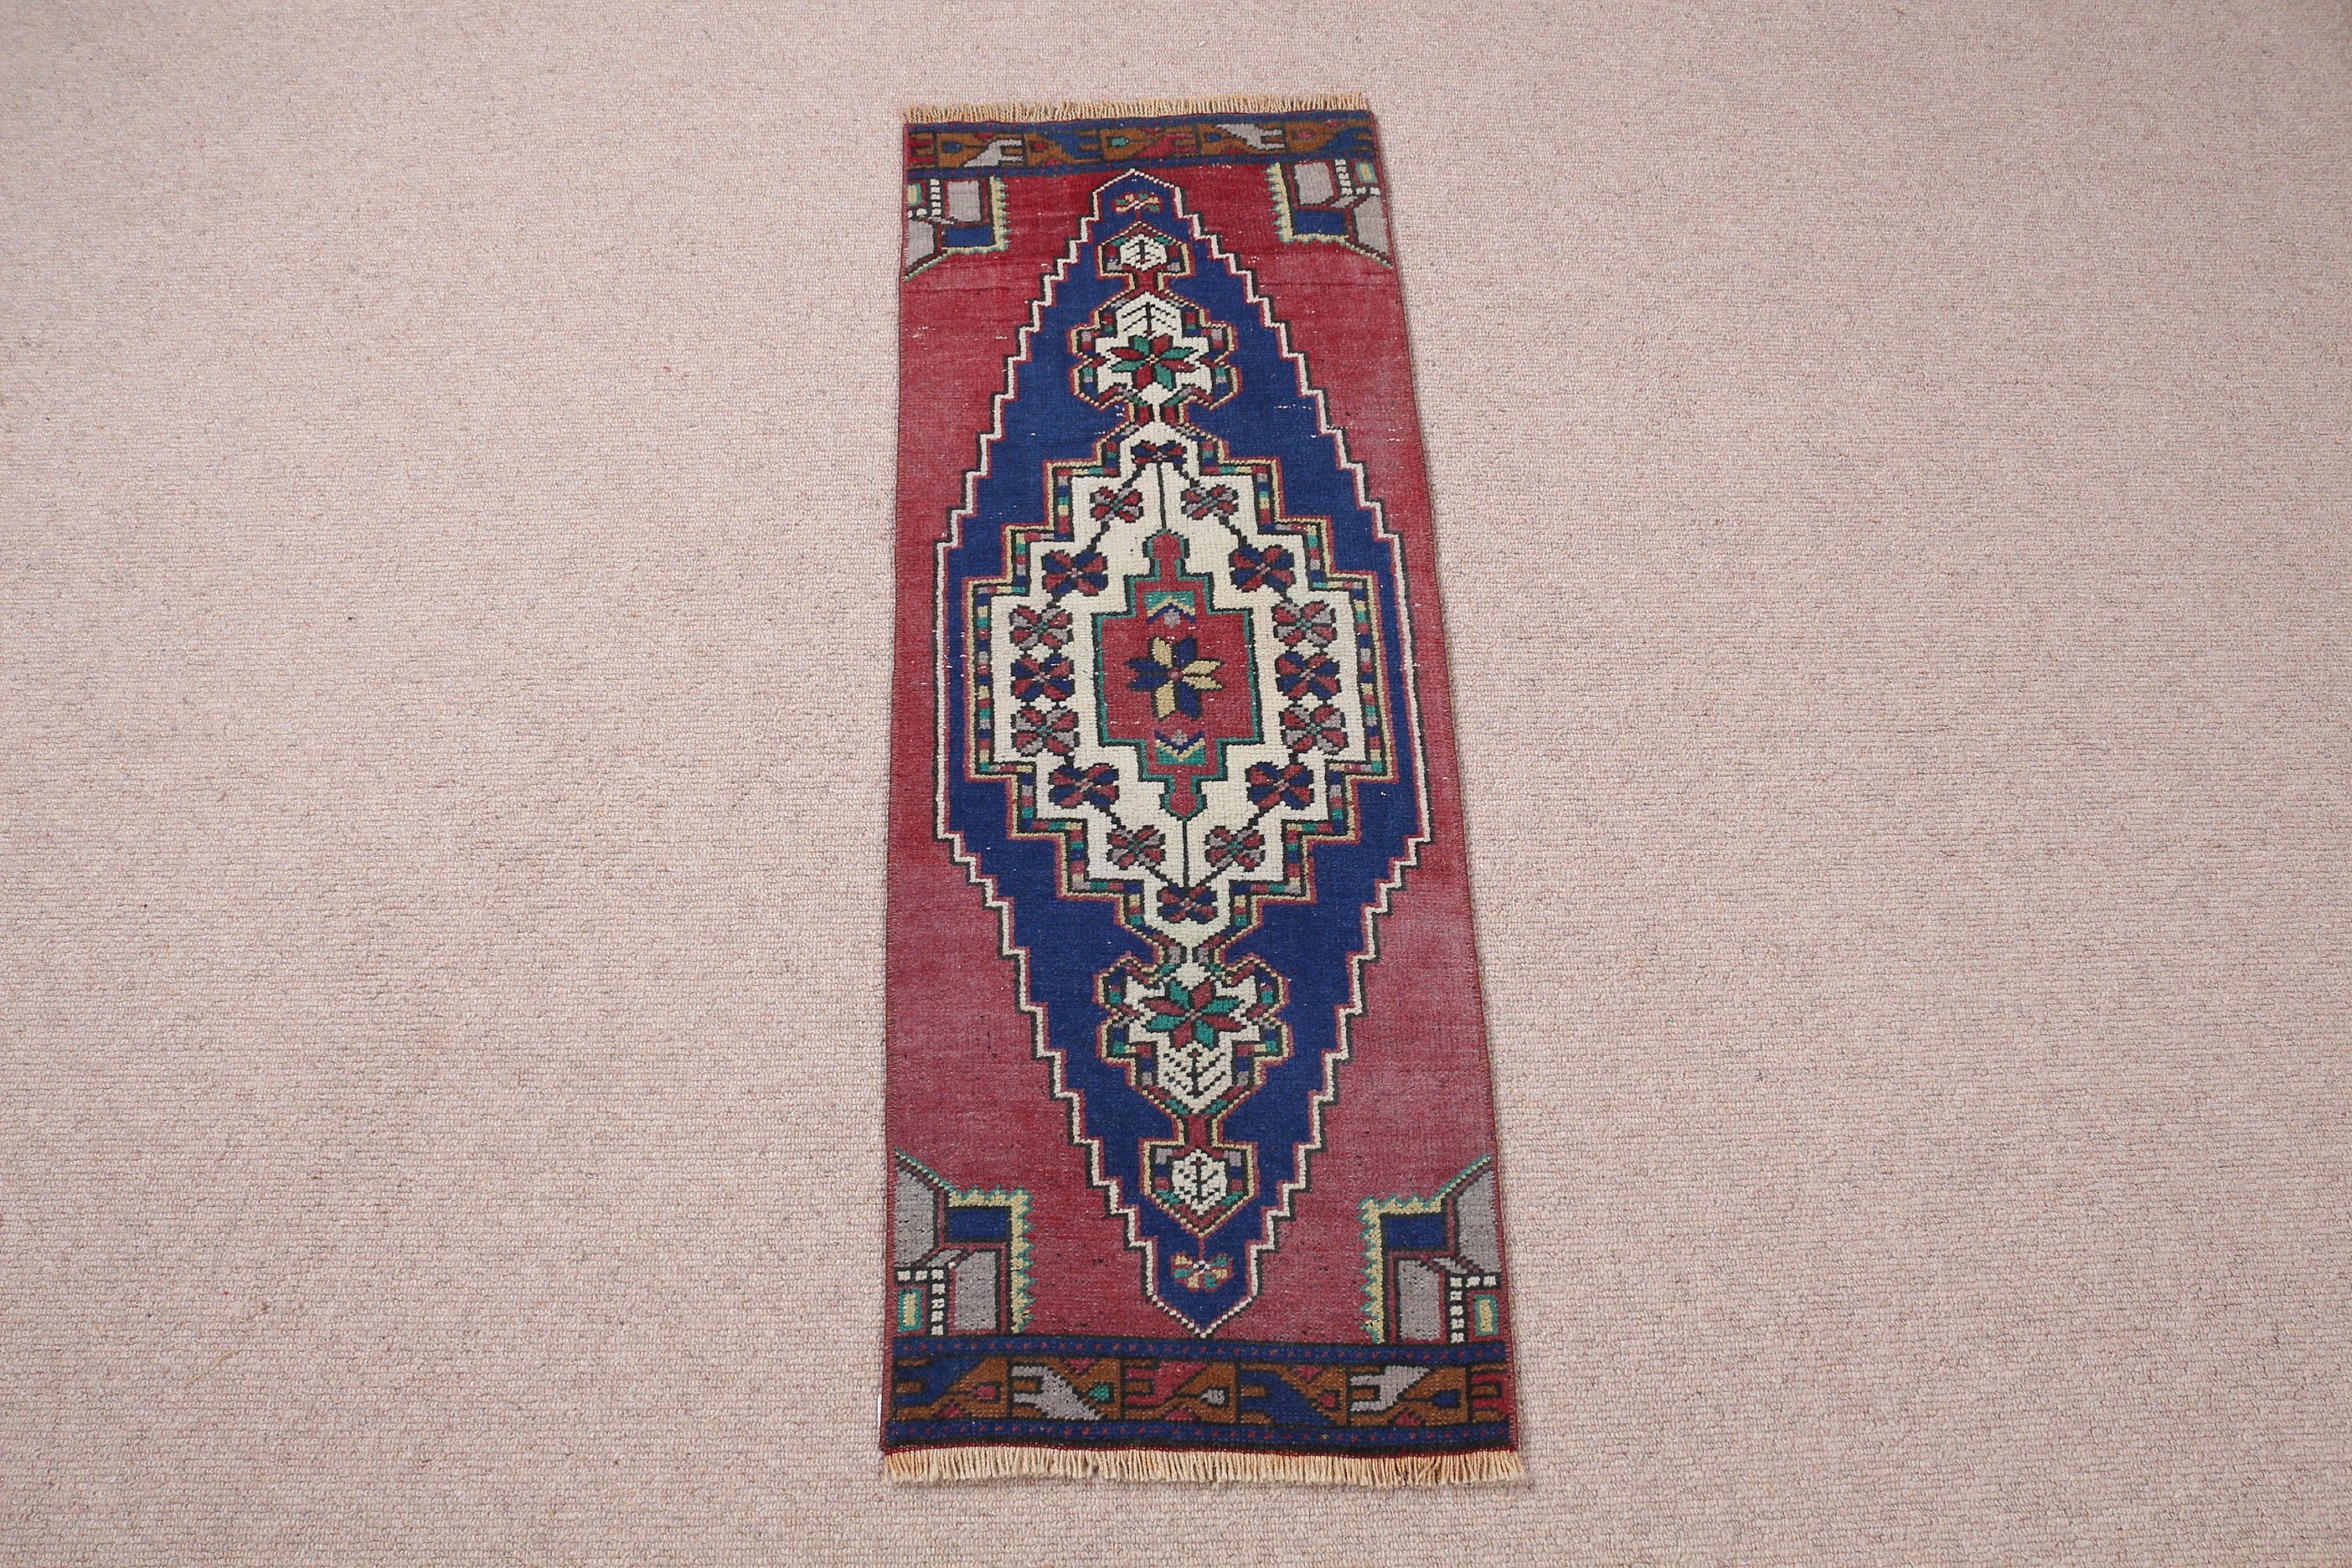 Turkish Rugs, Bedroom Rugs, Rugs for Nursery, Eclectic Rug, Nursery Rug, Blue  1.2x3.2 ft Small Rug, Floor Rug, Vintage Rugs